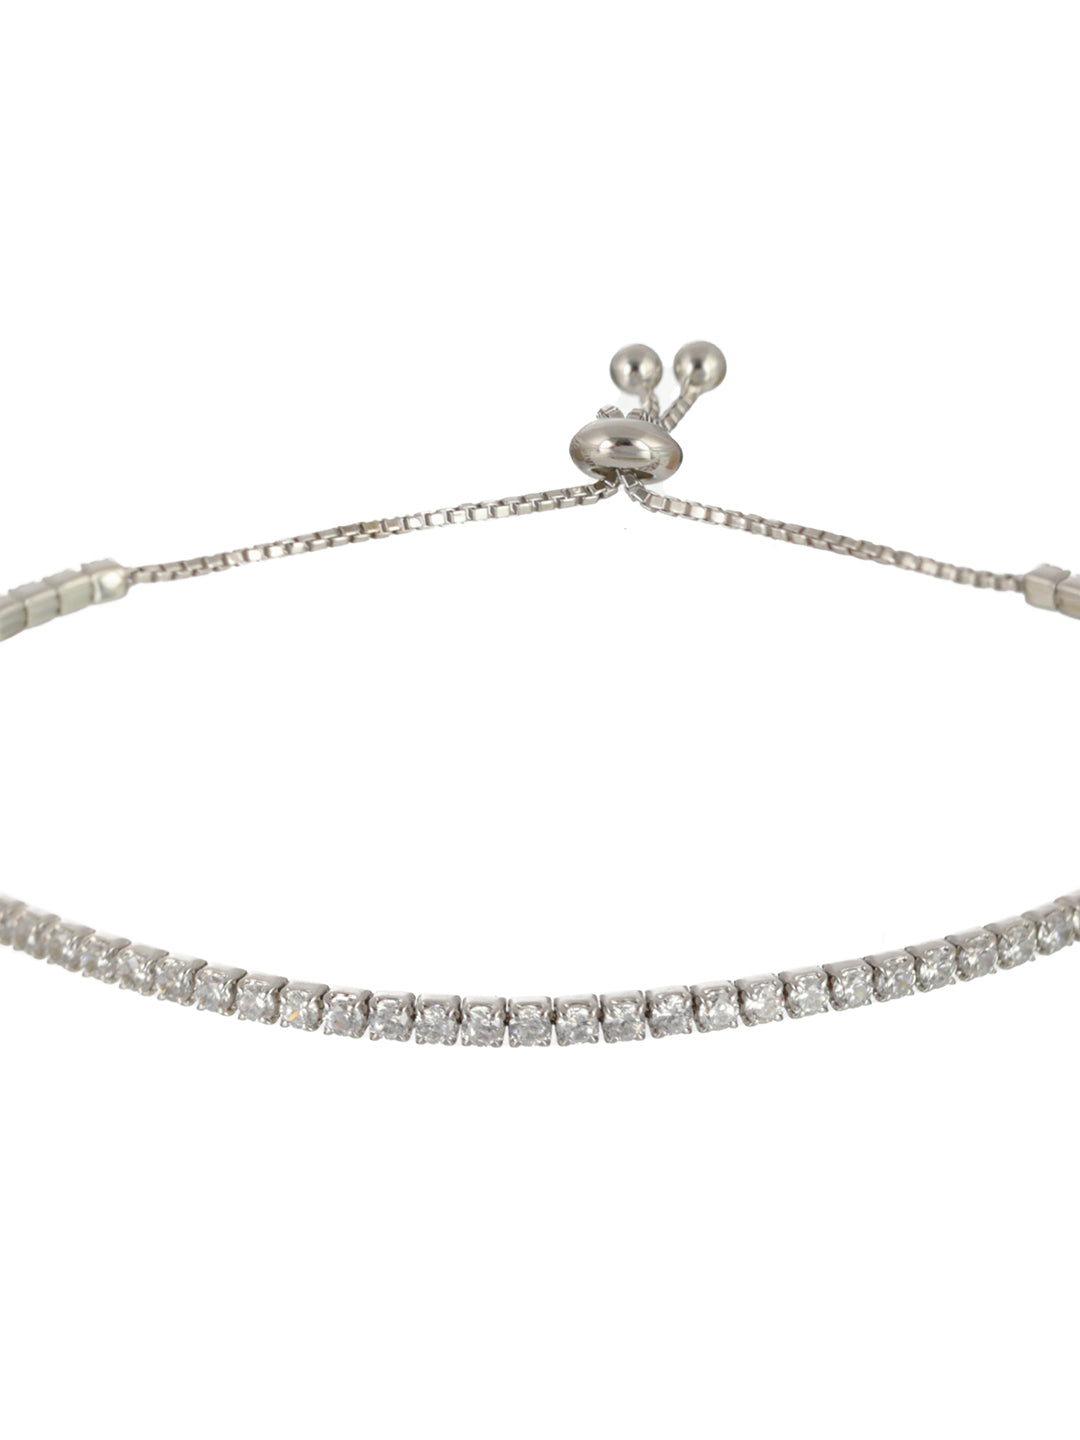 Sheer by Priyaasi Minimal American Diamond Sterling Silver Link Bracelet